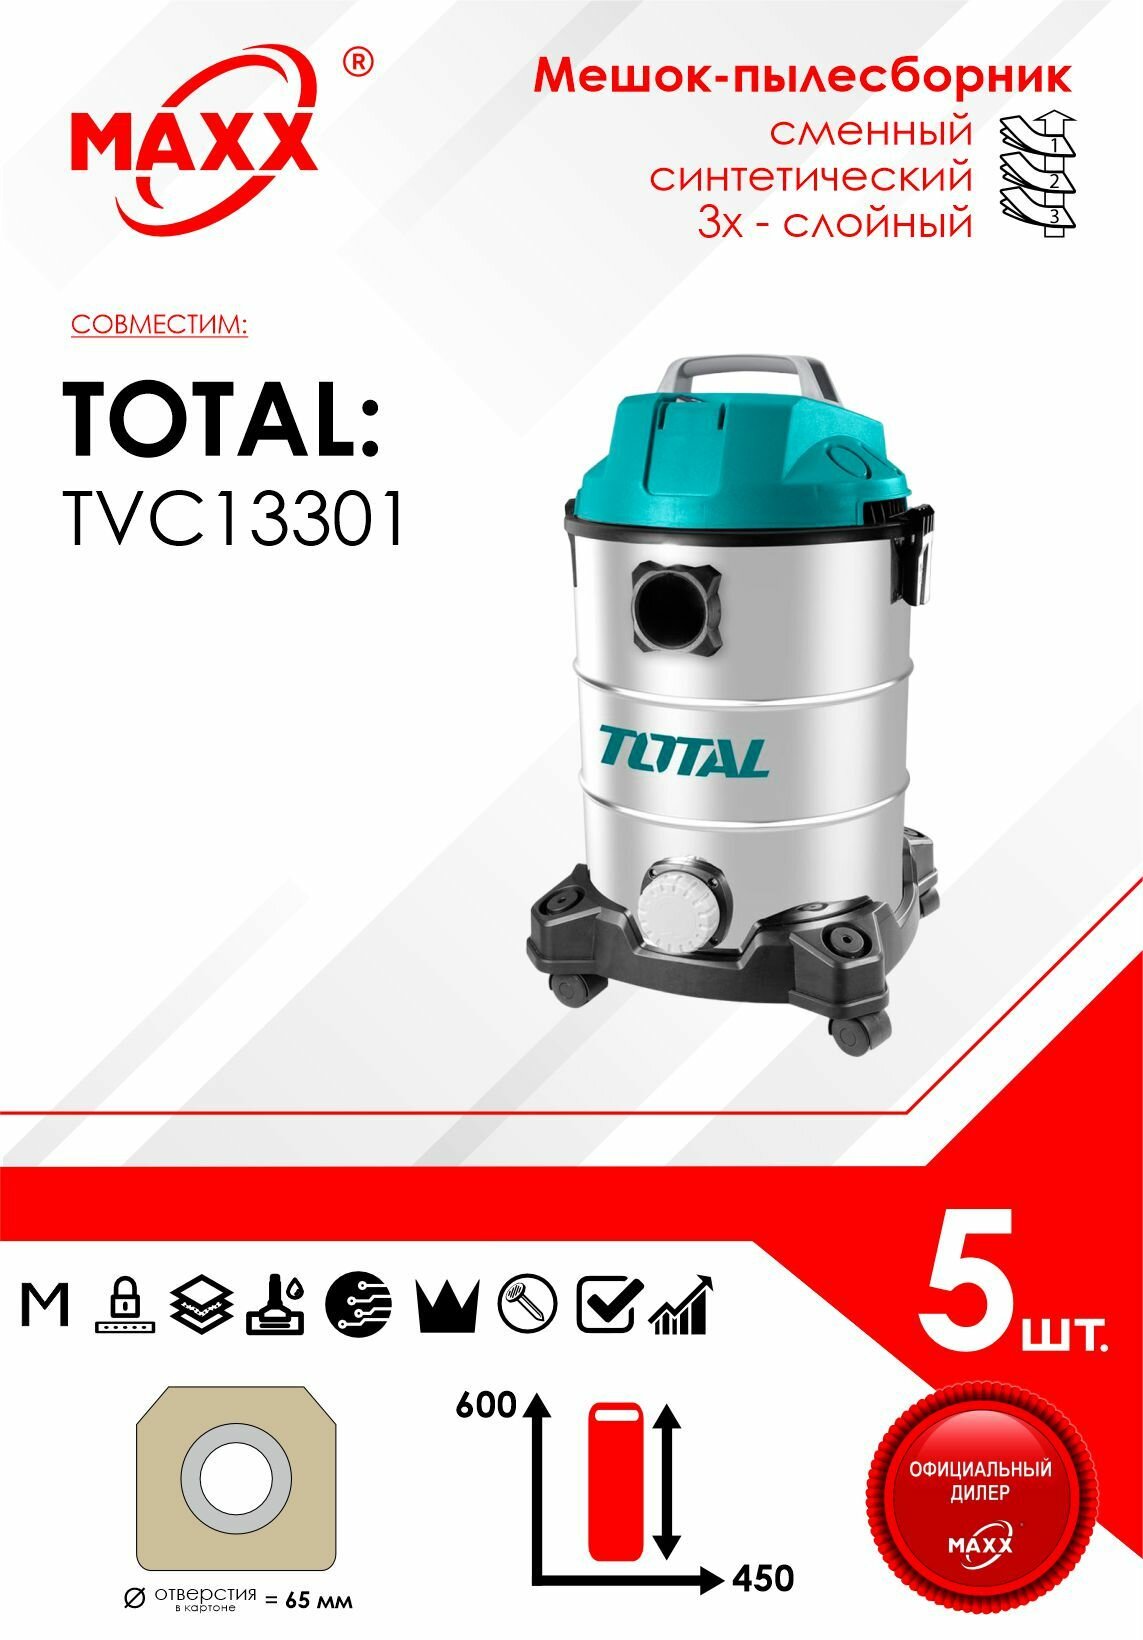 Мешок - пылесборник 5 шт. для пылесоса TOTAL TVC13301, 1300W, бак 30л